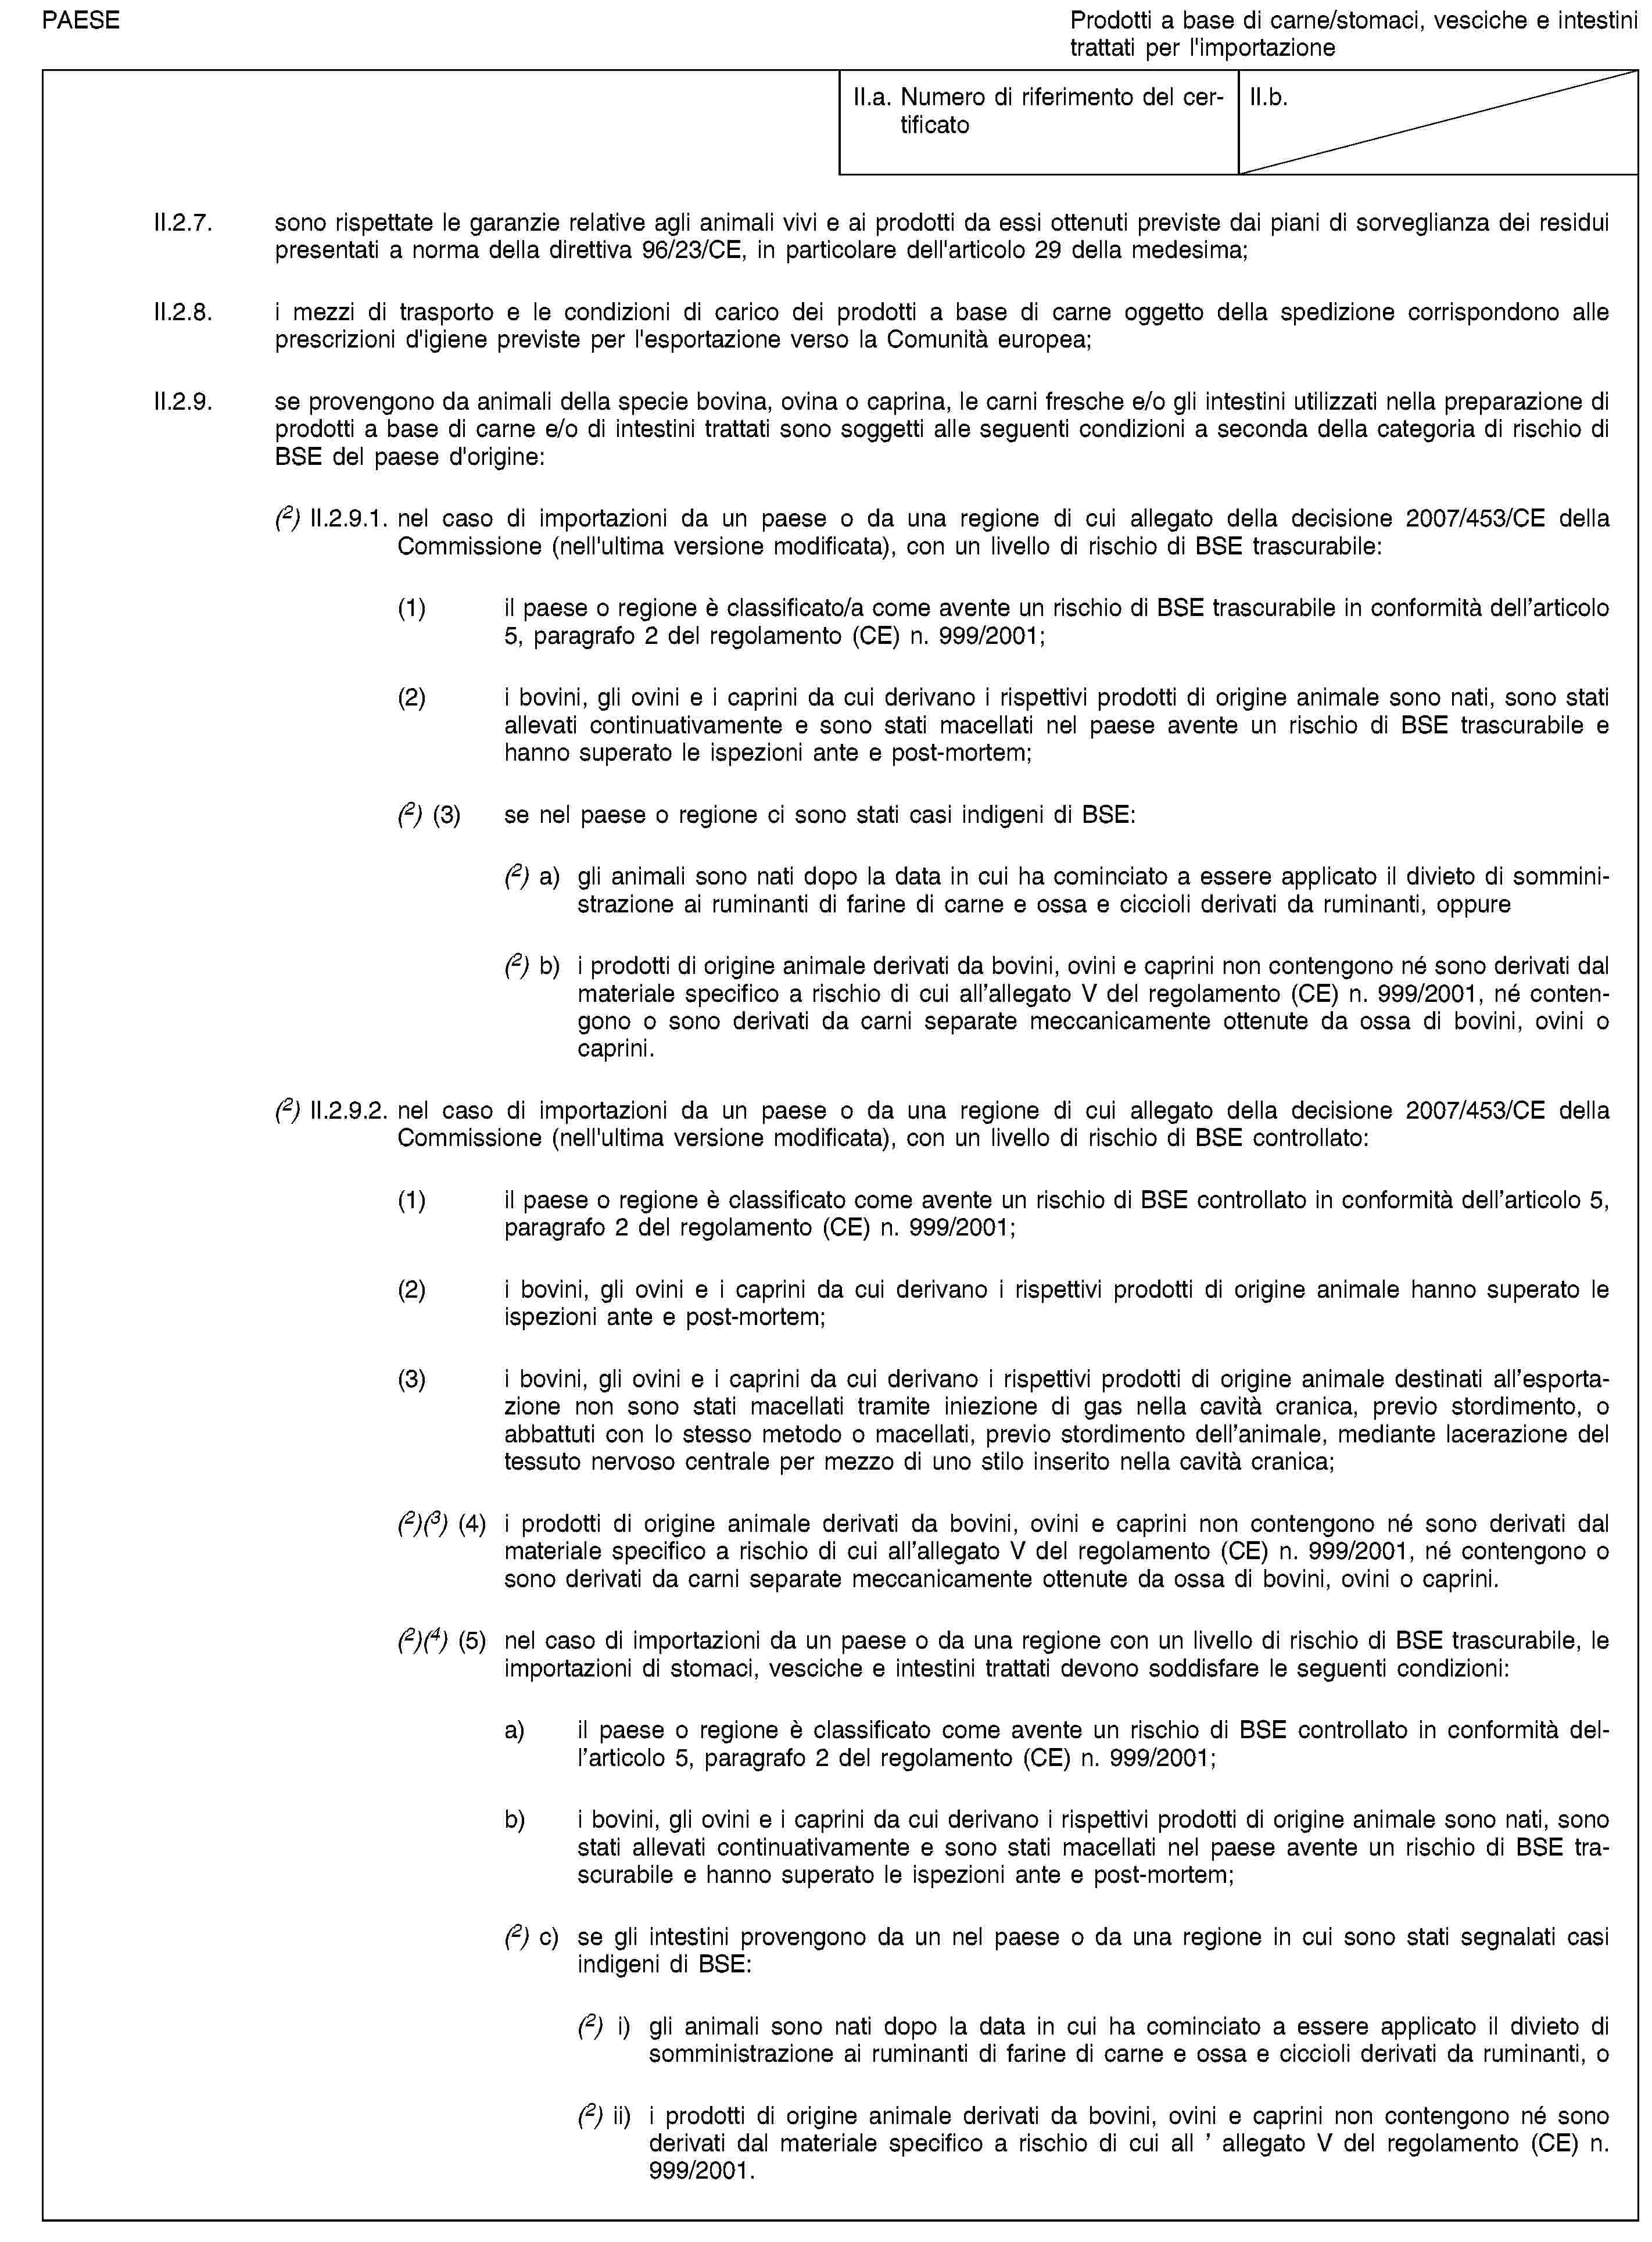 PAESEProdotti a base di carne/stomaci, vesciche e intestini trattati per l'importazioneII.a. Numero di riferimento del certificatoII.b.II.2.7. sono rispettate le garanzie relative agli animali vivi e ai prodotti da essi ottenuti previste dai piani di sorveglianza dei residui presentati a norma della direttiva 96/23/CE, in particolare dell'articolo 29 della medesima;II.2.8. i mezzi di trasporto e le condizioni di carico dei prodotti a base di carne oggetto della spedizione corrispondono alle prescrizioni d'igiene previste per l'esportazione verso la Comunità europea;II.2.9. se provengono da animali della specie bovina, ovina o caprina, le carni fresche e/o gli intestini utilizzati nella preparazione di prodotti a base di carne e/o di intestini trattati sono soggetti alle seguenti condizioni a seconda della categoria di rischio di BSE del paese d'origine:(2) II.2.9.1. nel caso di importazioni da un paese o da una regione di cui allegato della decisione 2007/453/CE della Commissione (nell'ultima versione modificata), con un livello di rischio di BSE trascurabile:(1) il paese o regione è classificato/a come avente un rischio di BSE trascurabile in conformità dell’articolo 5, paragrafo 2 del regolamento (CE) n. 999/2001;(2) i bovini, gli ovini e i caprini da cui derivano i rispettivi prodotti di origine animale sono nati, sono stati allevati continuativamente e sono stati macellati nel paese avente un rischio di BSE trascurabile e hanno superato le ispezioni ante e post-mortem;(2) (3) se nel paese o regione ci sono stati casi indigeni di BSE:(2) a) gli animali sono nati dopo la data in cui ha cominciato a essere applicato il divieto di somministrazione ai ruminanti di farine di carne e ossa e ciccioli derivati da ruminanti, oppure(2) b) i prodotti di origine animale derivati da bovini, ovini e caprini non contengono né sono derivati dal materiale specifico a rischio di cui all’allegato V del regolamento (CE) n. 999/2001, né contengono o sono derivati da carni separate meccanicamente ottenute da ossa di bovini, ovini o caprini.(2) II.2.9.2. nel caso di importazioni da un paese o da una regione di cui allegato della decisione 2007/453/CE della Commissione (nell'ultima versione modificata), con un livello di rischio di BSE controllato:(1) il paese o regione è classificato come avente un rischio di BSE controllato in conformità dell’articolo 5, paragrafo 2 del regolamento (CE) n. 999/2001;(2) i bovini, gli ovini e i caprini da cui derivano i rispettivi prodotti di origine animale hanno superato le ispezioni ante e post-mortem;(3) i bovini, gli ovini e i caprini da cui derivano i rispettivi prodotti di origine animale destinati all’esportazione non sono stati macellati tramite iniezione di gas nella cavità cranica, previo stordimento, o abbattuti con lo stesso metodo o macellati, previo stordimento dell’animale, mediante lacerazione del tessuto nervoso centrale per mezzo di uno stilo inserito nella cavità cranica;(2)(3) (4) i prodotti di origine animale derivati da bovini, ovini e caprini non contengono né sono derivati dal materiale specifico a rischio di cui all’allegato V del regolamento (CE) n. 999/2001, né contengono o sono derivati da carni separate meccanicamente ottenute da ossa di bovini, ovini o caprini.(2)(4) (5) nel caso di importazioni da un paese o da una regione con un livello di rischio di BSE trascurabile, le importazioni di stomaci, vesciche e intestini trattati devono soddisfare le seguenti condizioni:a) il paese o regione è classificato come avente un rischio di BSE controllato in conformità dell’articolo 5, paragrafo 2 del regolamento (CE) n. 999/2001;b) i bovini, gli ovini e i caprini da cui derivano i rispettivi prodotti di origine animale sono nati, sono stati allevati continuativamente e sono stati macellati nel paese avente un rischio di BSE trascurabile e hanno superato le ispezioni ante e post-mortem;(2) c) se gli intestini provengono da un nel paese o da una regione in cui sono stati segnalati casi indigeni di BSE:(2) i) gli animali sono nati dopo la data in cui ha cominciato a essere applicato il divieto di somministrazione ai ruminanti di farine di carne e ossa e ciccioli derivati da ruminanti, o(2) ii) i prodotti di origine animale derivati da bovini, ovini e caprini non contengono né sono derivati dal materiale specifico a rischio di cui all ’ allegato V del regolamento (CE) n. 999/2001.